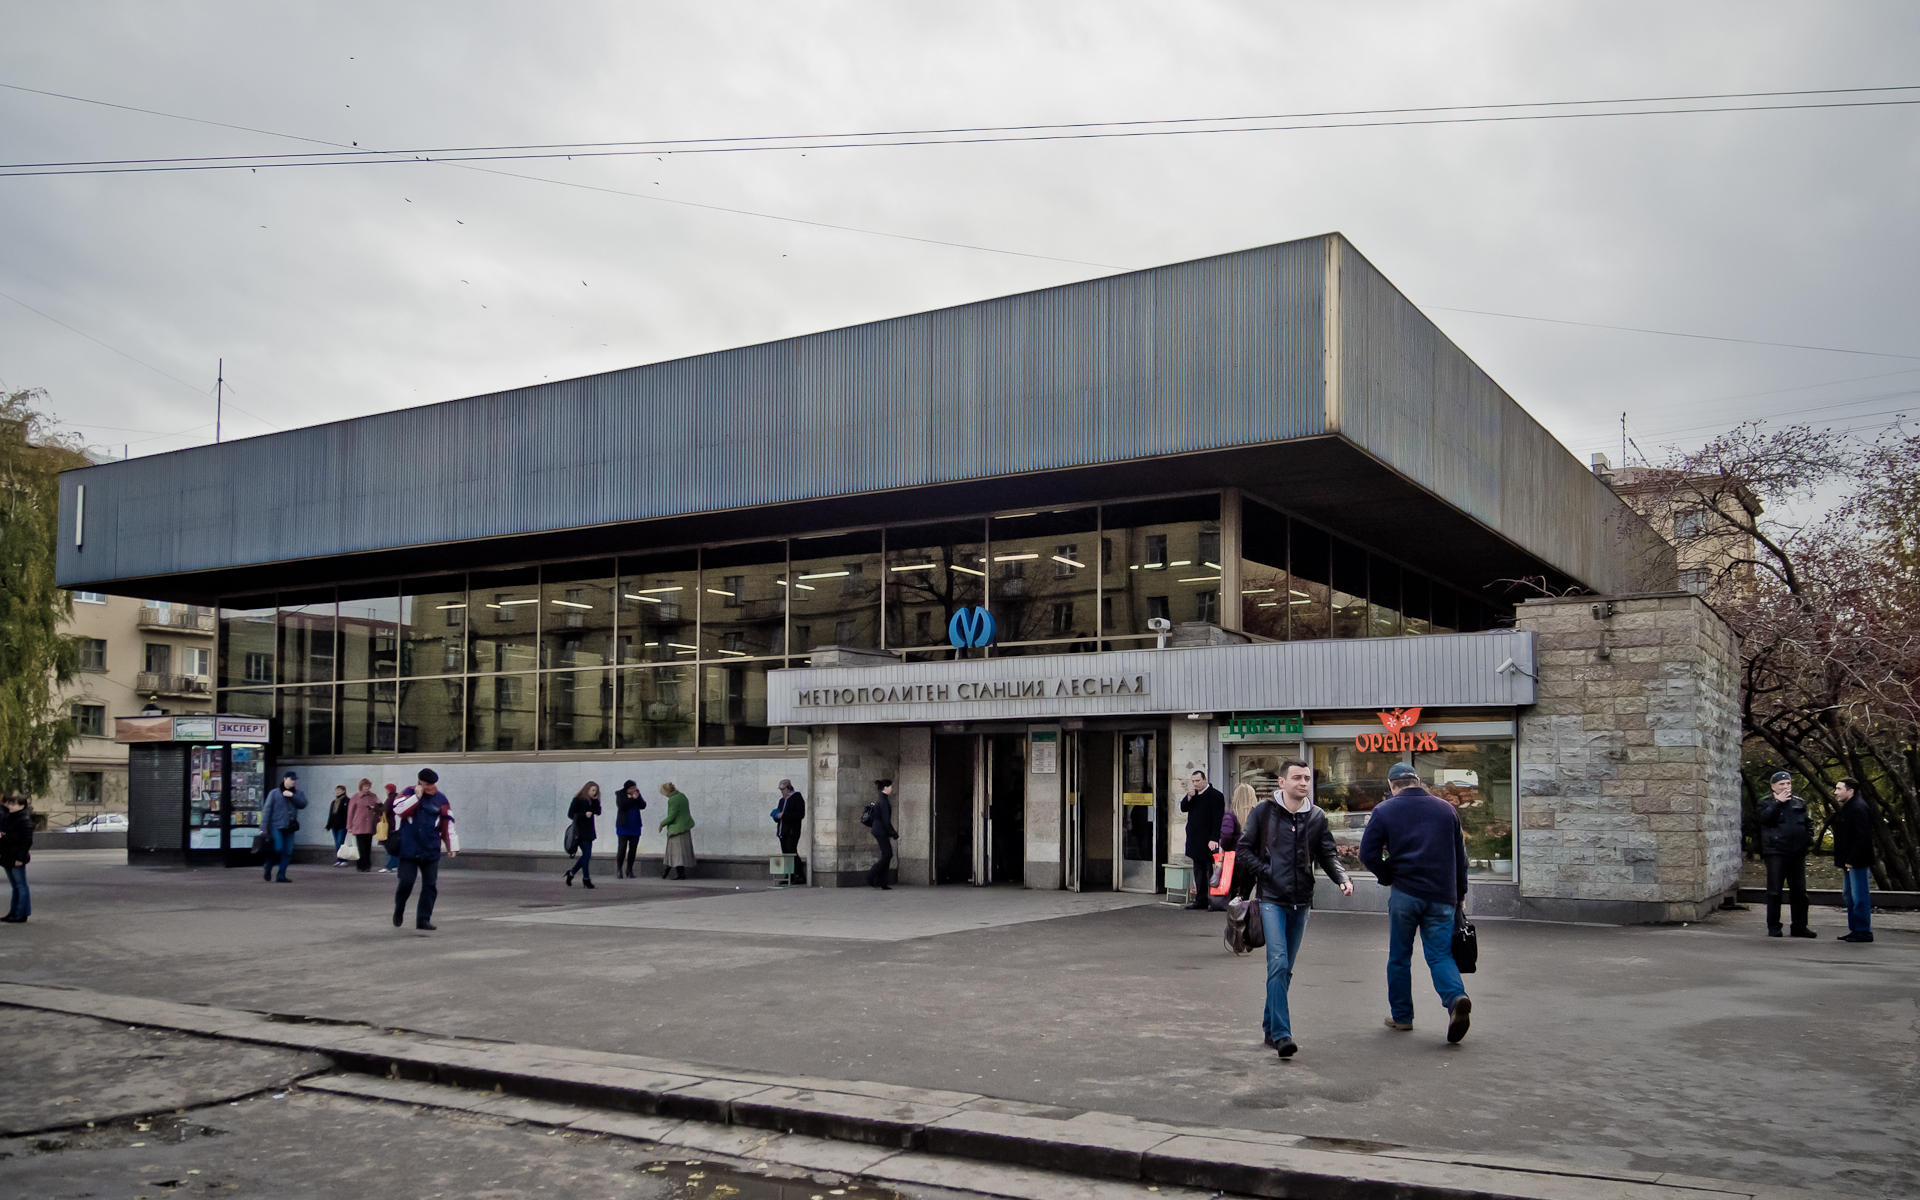 Станция метрополитена «Лесная» закрывается на капитальный ремонт